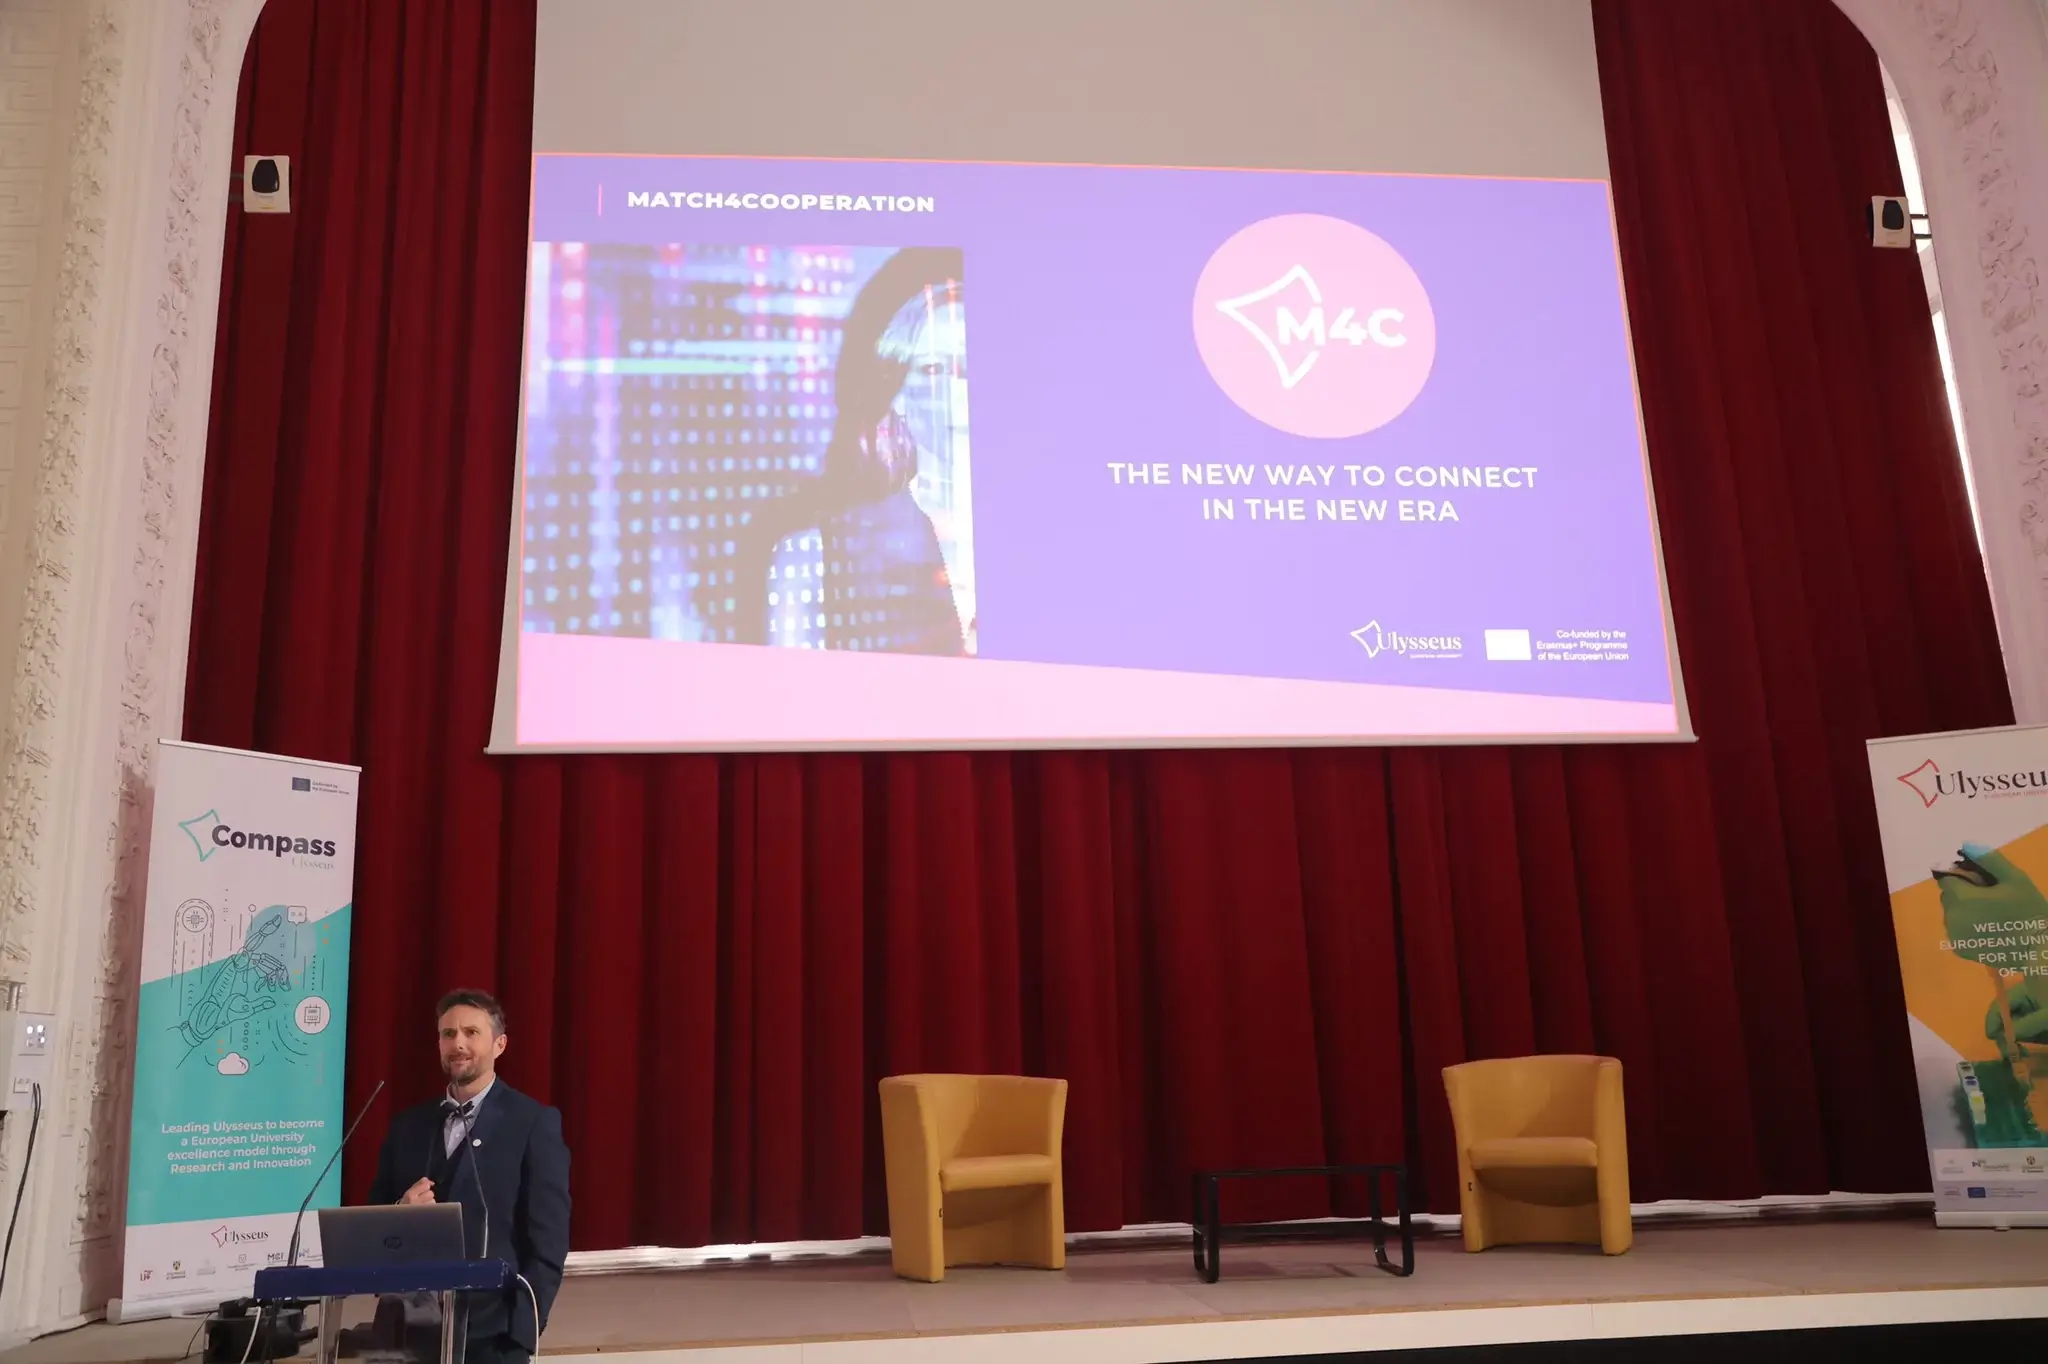 Ulysseus startet Match4Cooperation, das soziale Netzwerk zur Vernetzung von Forschenden in der Allianz